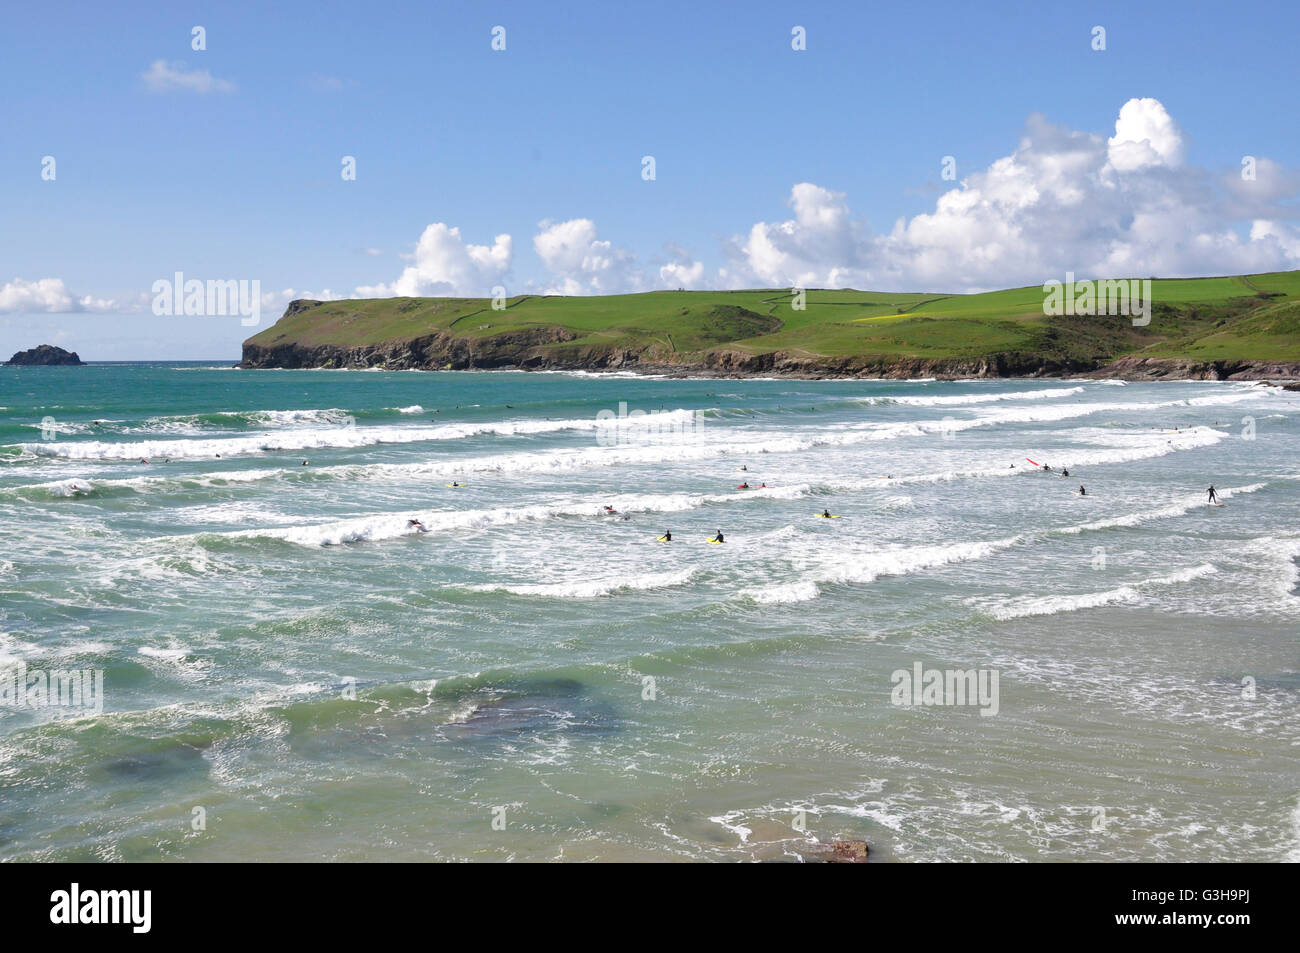 Cornwall - Polzeath Strand - wogenden eingehende Flut - weißen angeschnittene Ärmel Wellen - Surfer - Kulisse Pentire Head - blauen Meeres und des Himmels Stockfoto